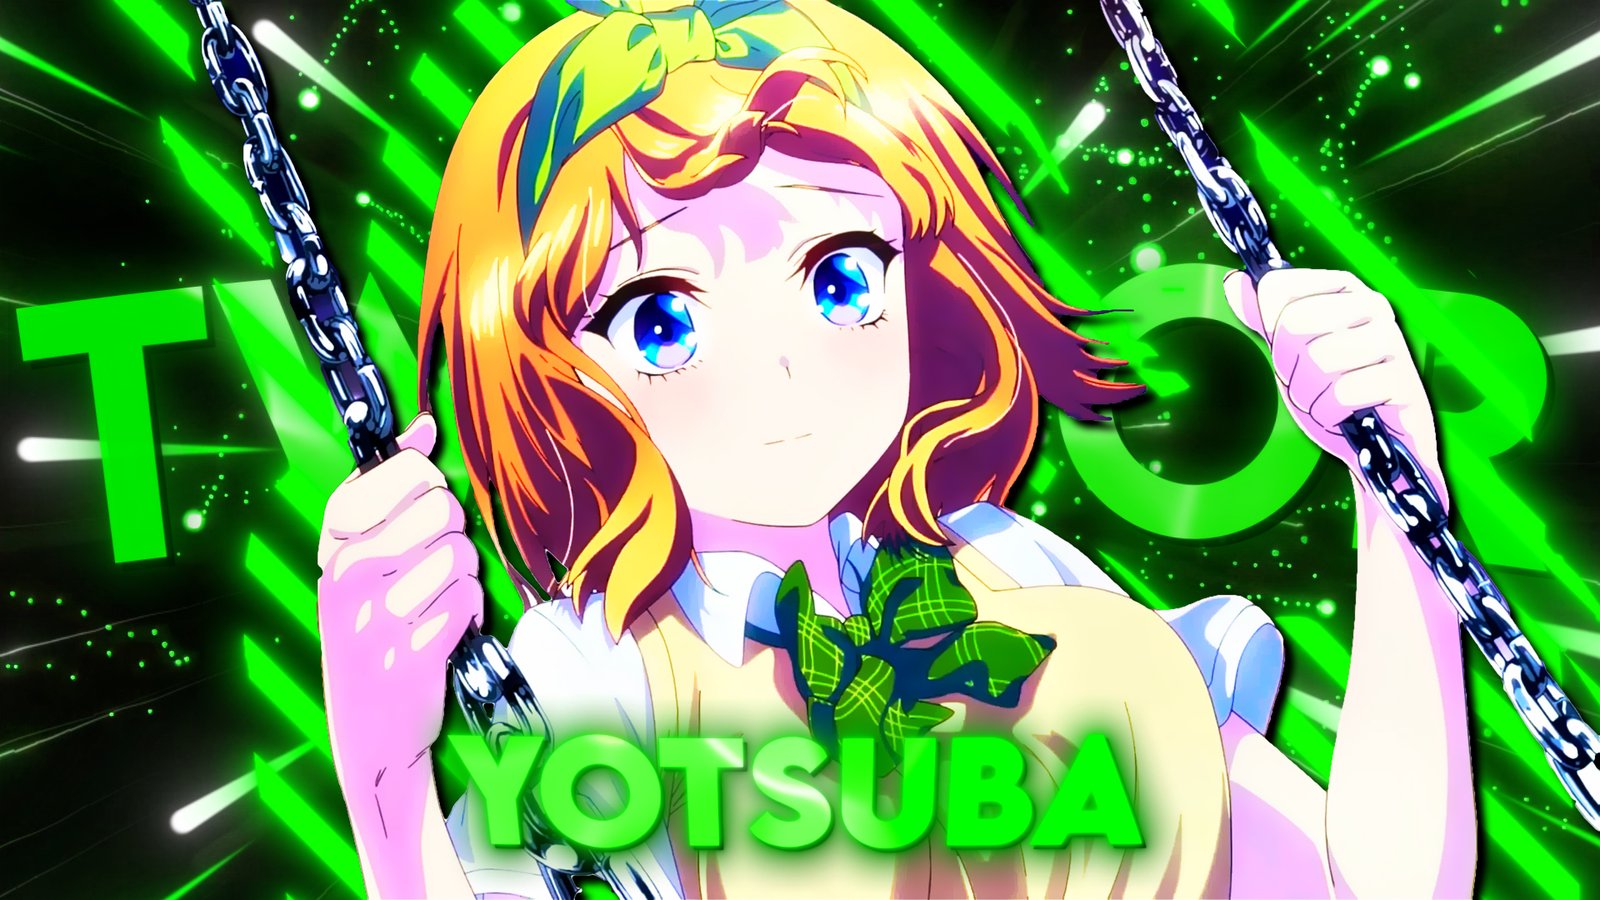 Yotsuba EP2 Twixtor